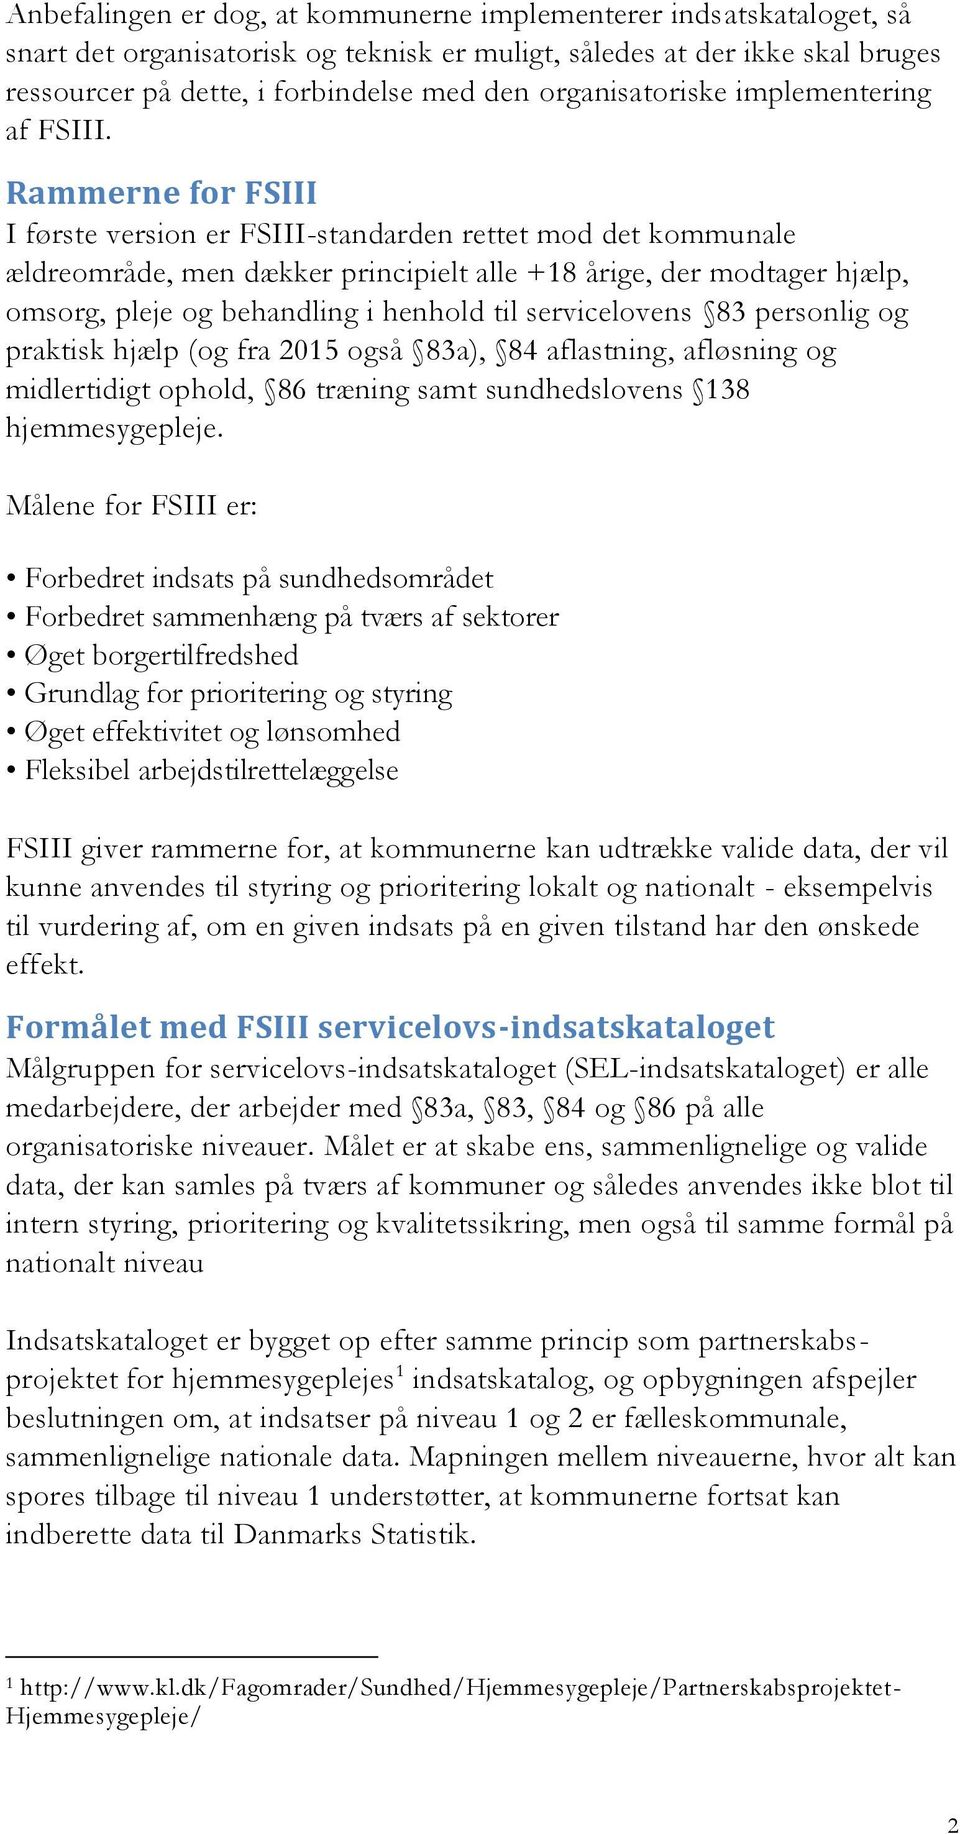 Rammerne for FSIII I første version er FSIII-standarden rettet mod det kommunale ældreområde, men dækker principielt alle +18 årige, der modtager hjælp, omsorg, pleje og behandling i henhold til